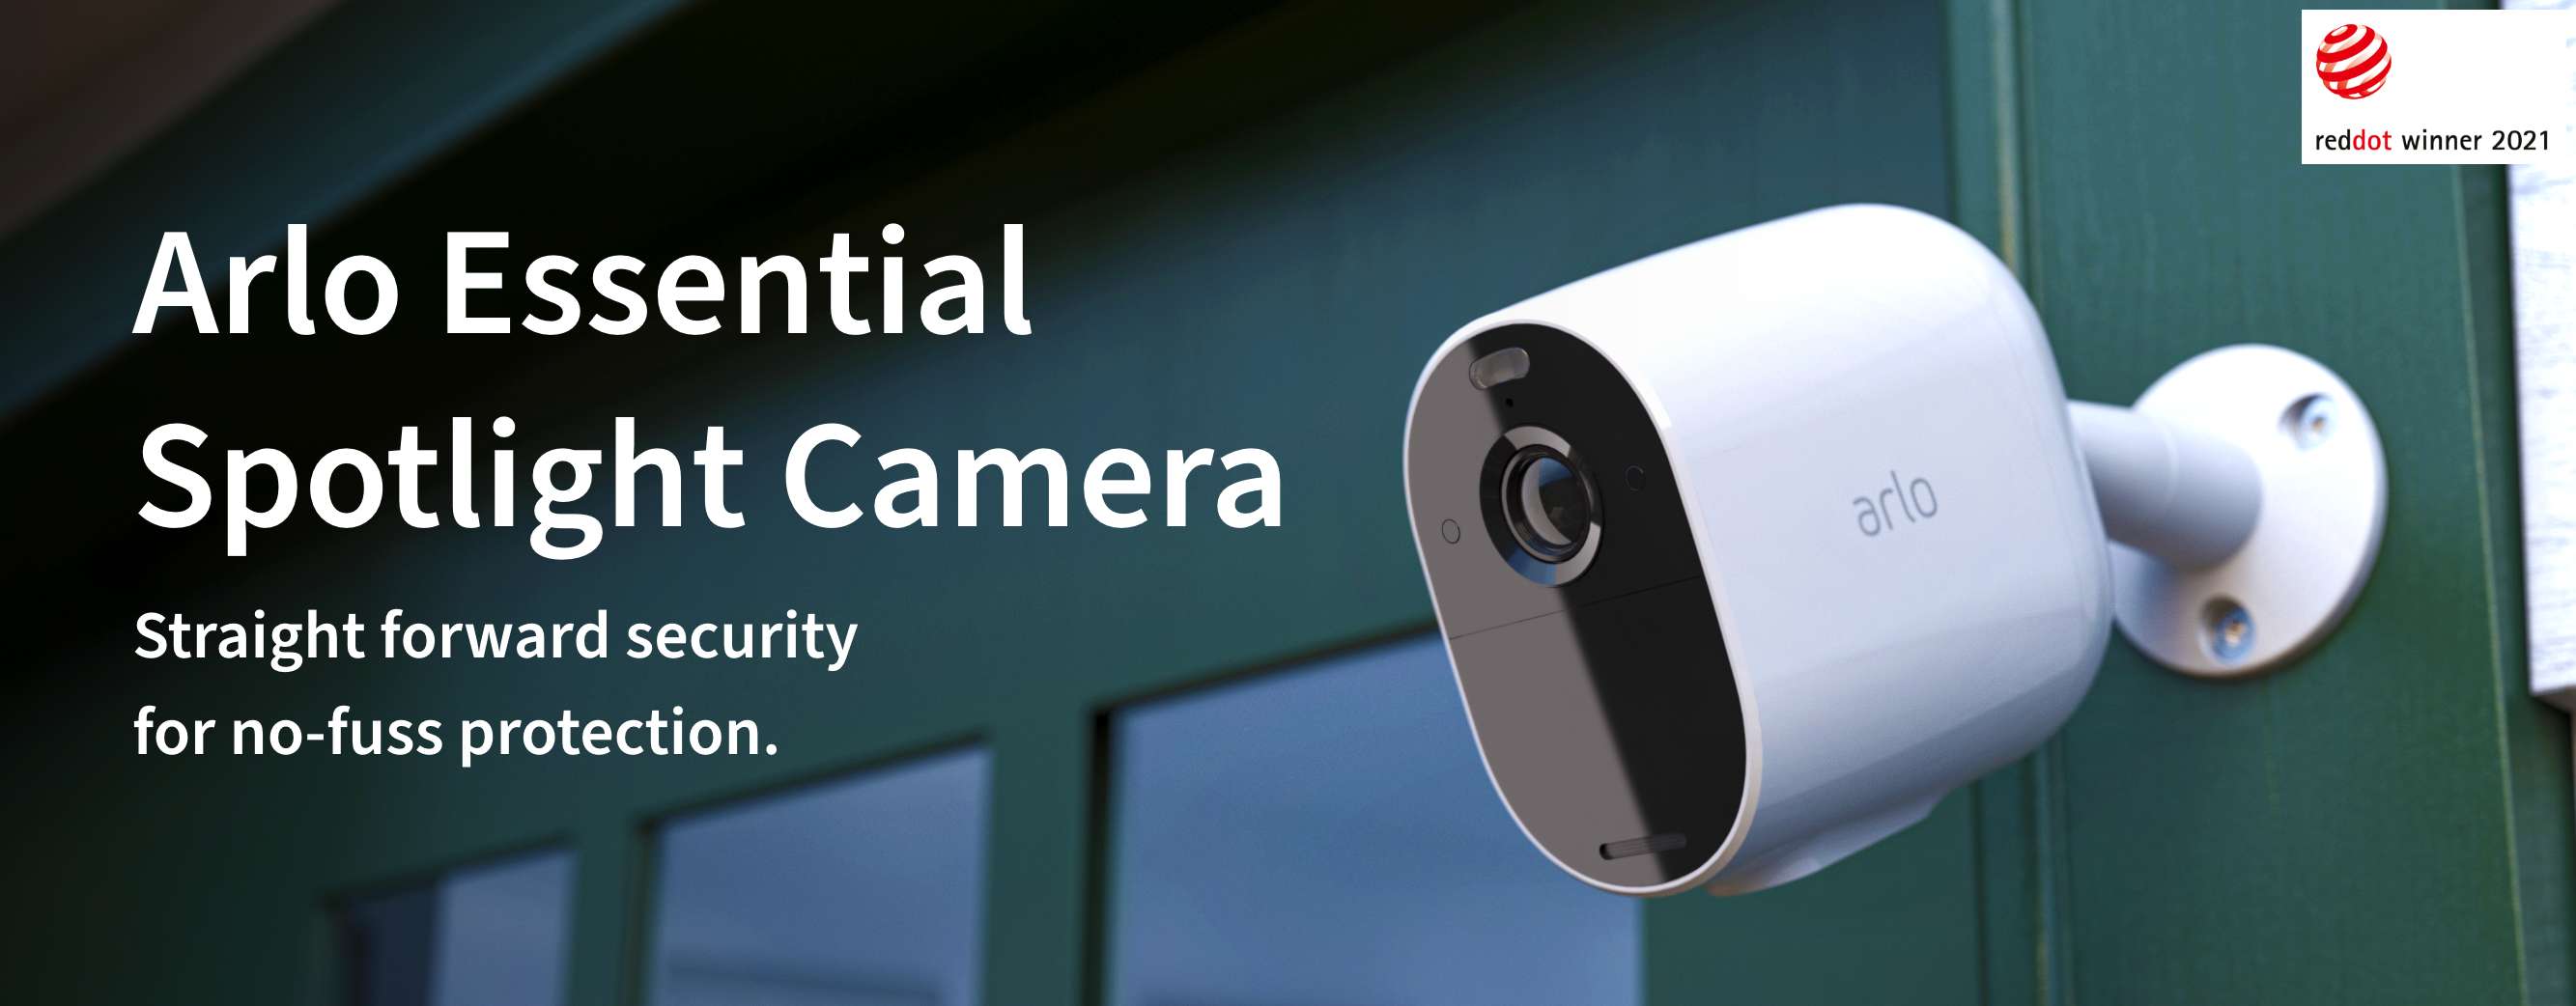 Arlo Essential Spotlight camera attached to a door, Reddot winner 2021 UK